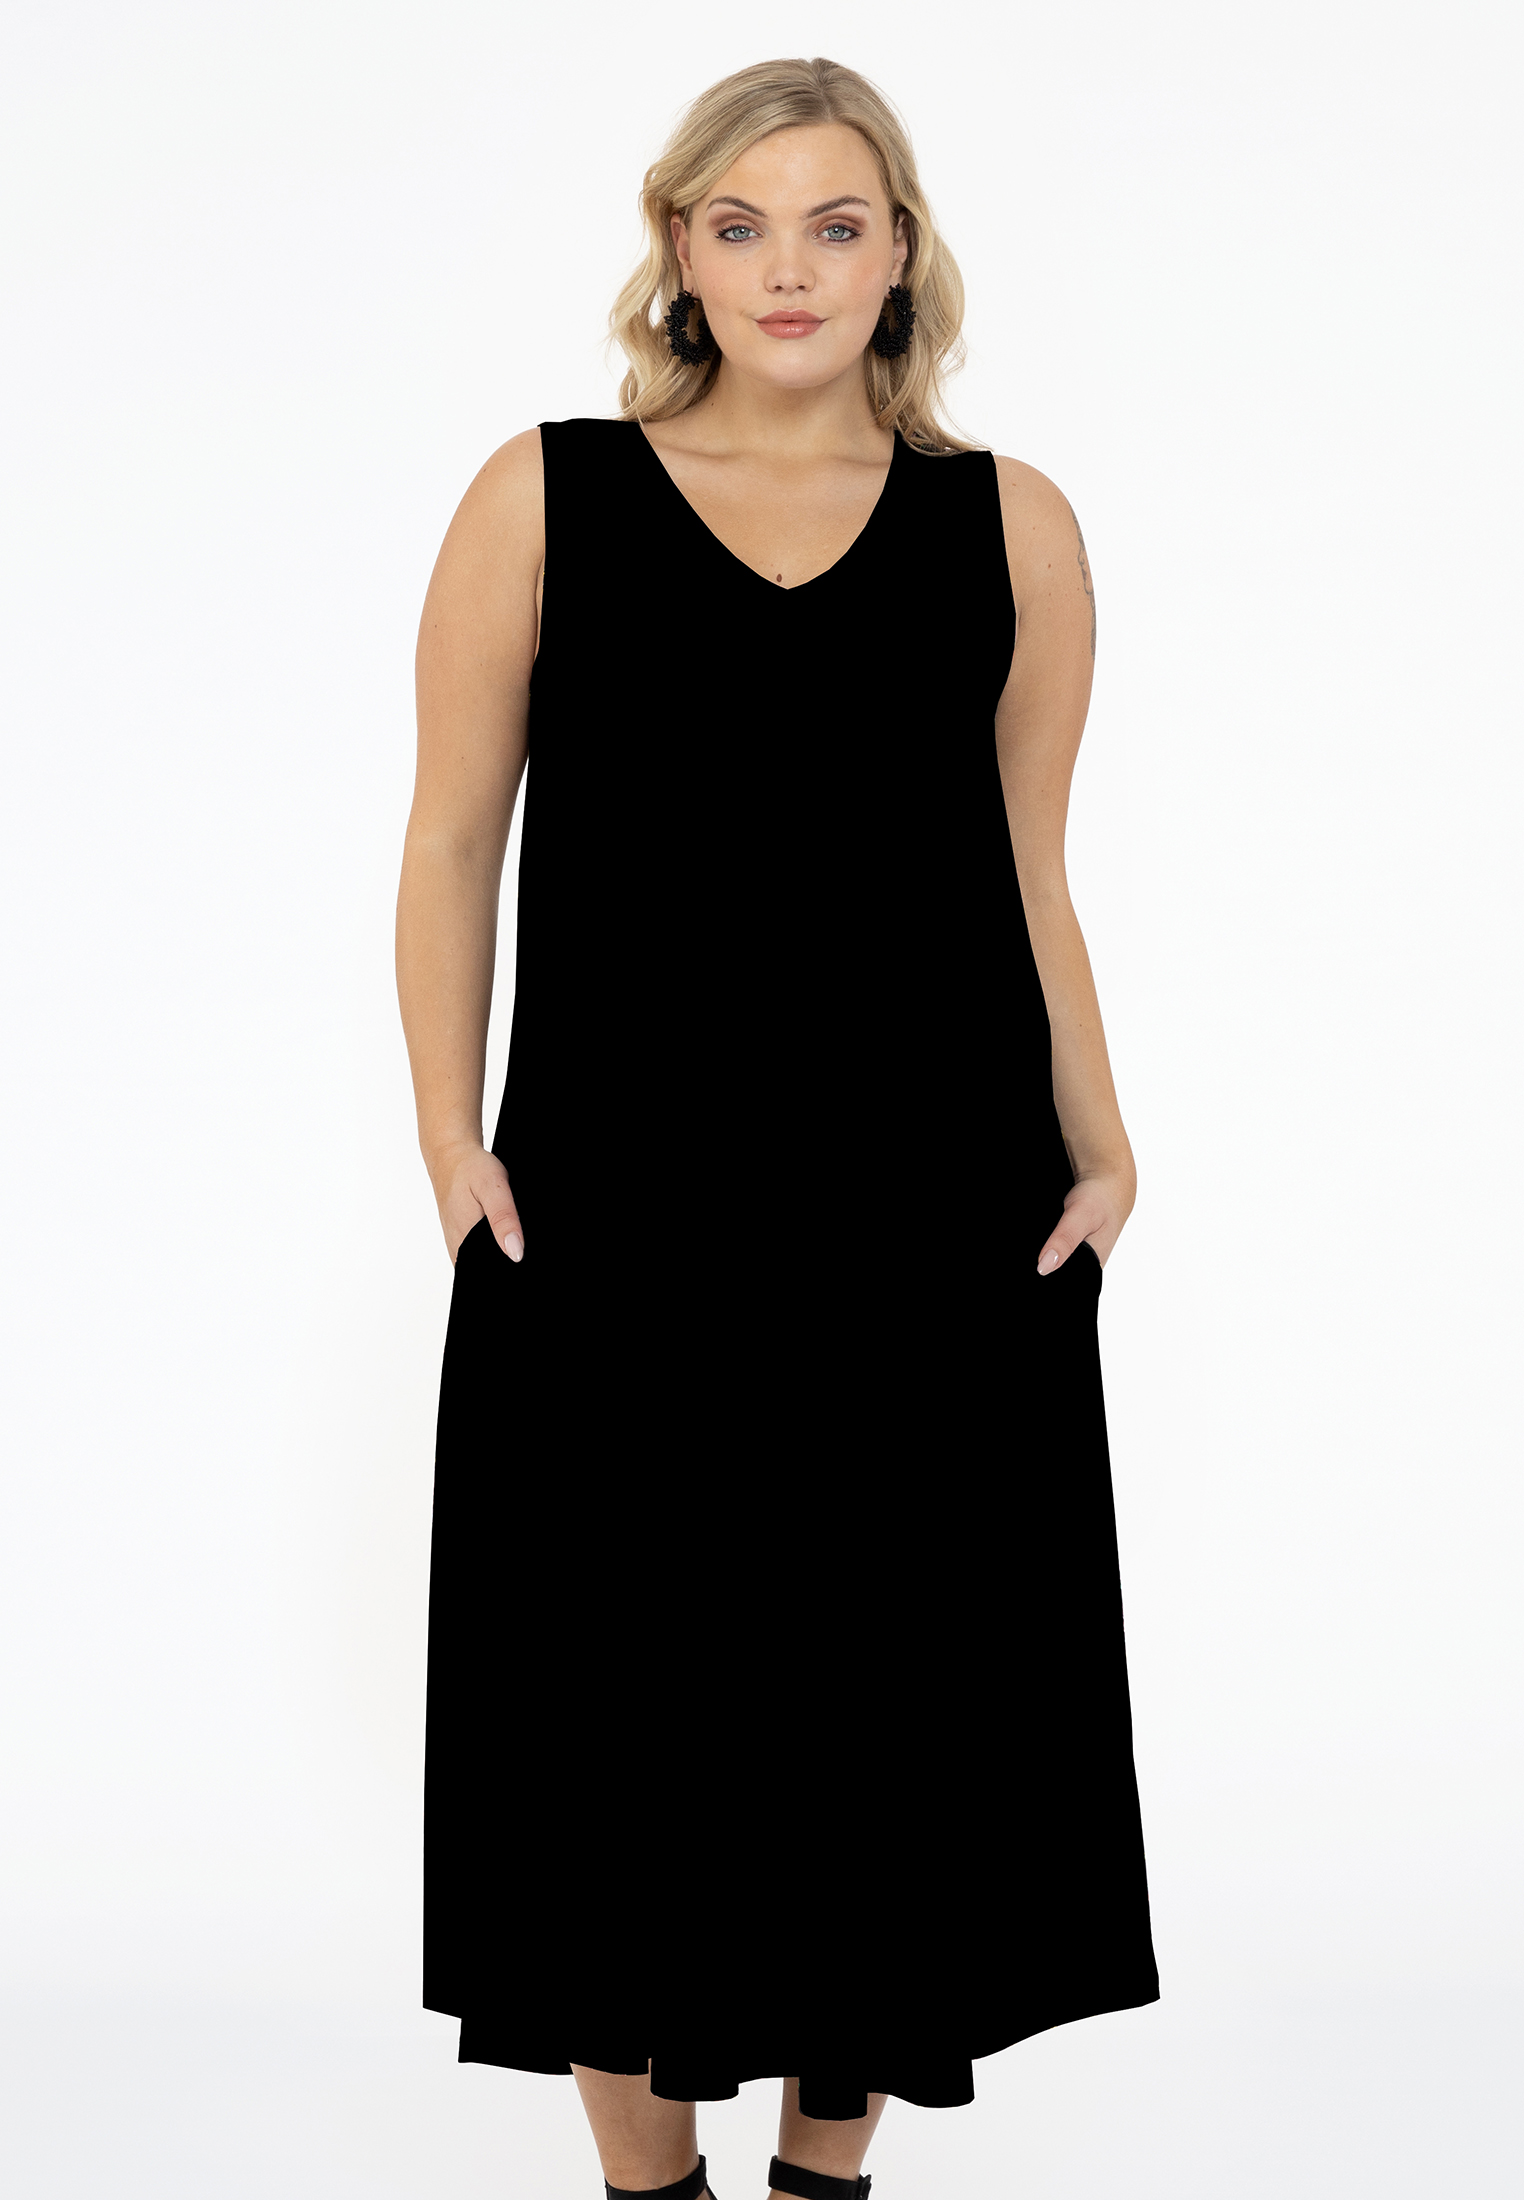 Mouwloze jurk A-lijn DOLCE 46/48 black